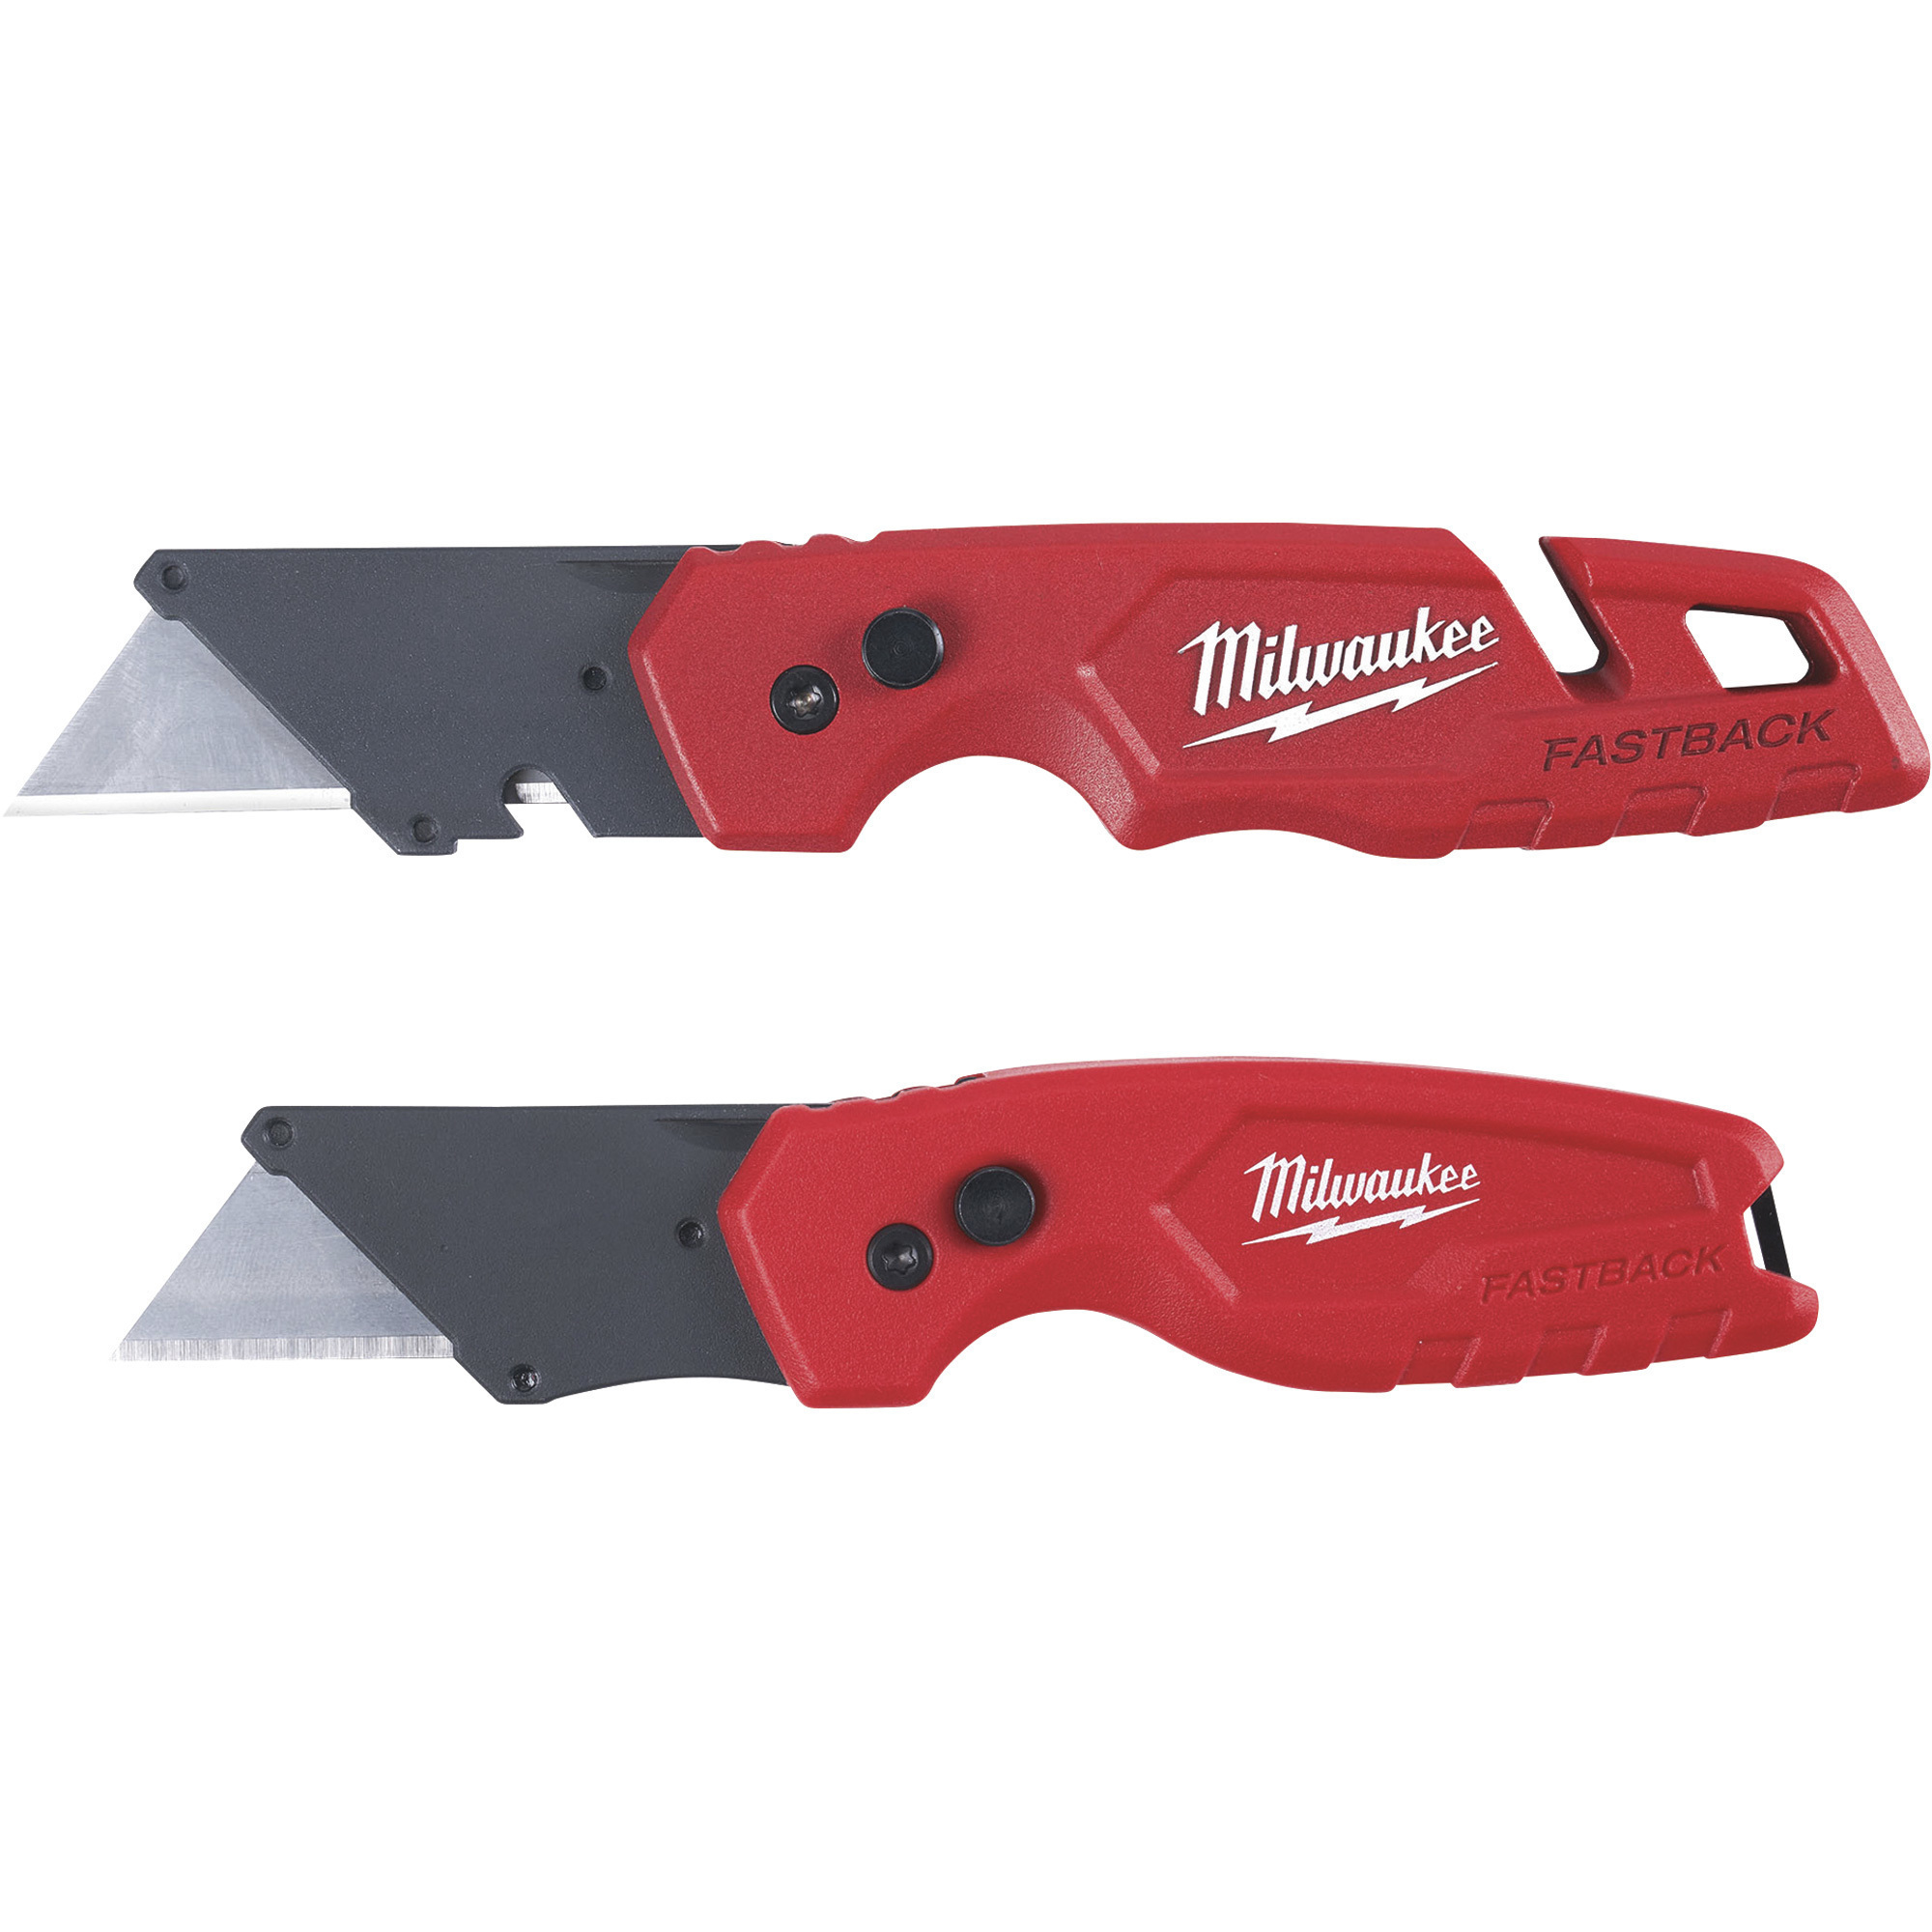 Milwaukee Fastback Folding Utility Knife Set, Model 48-22-1503